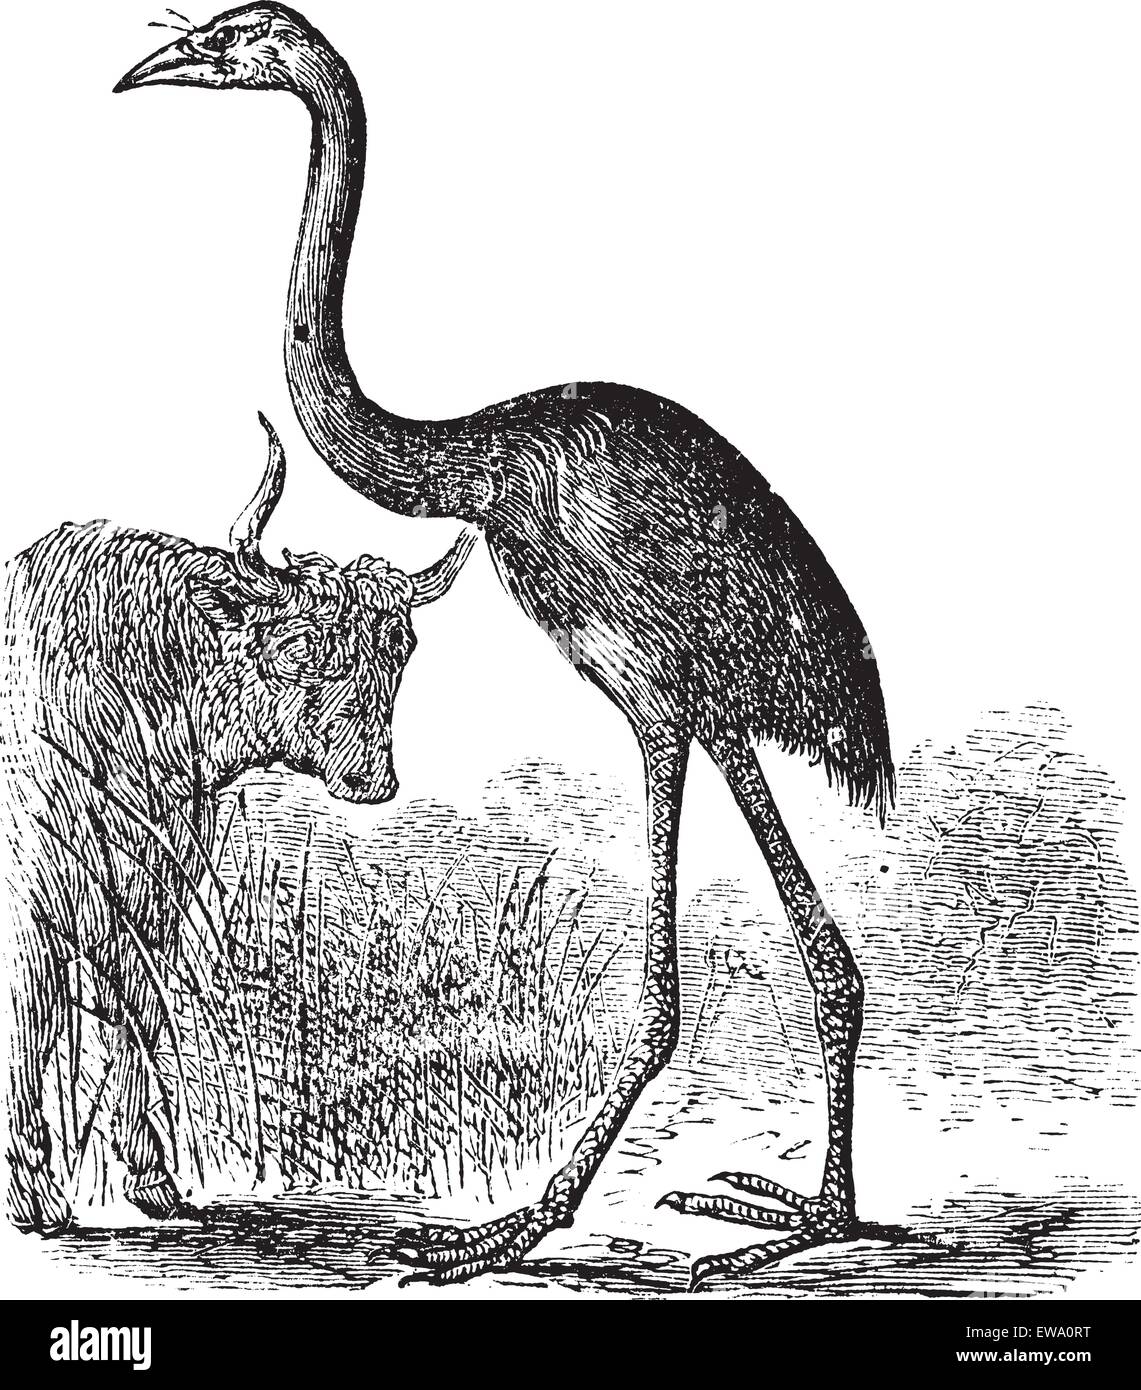 Géant de l'île du Sud ou Moa Dinornis giganteus, gravure d'époque. Gravée ancienne illustration d'une île du Sud Moa géant. Illustration de Vecteur